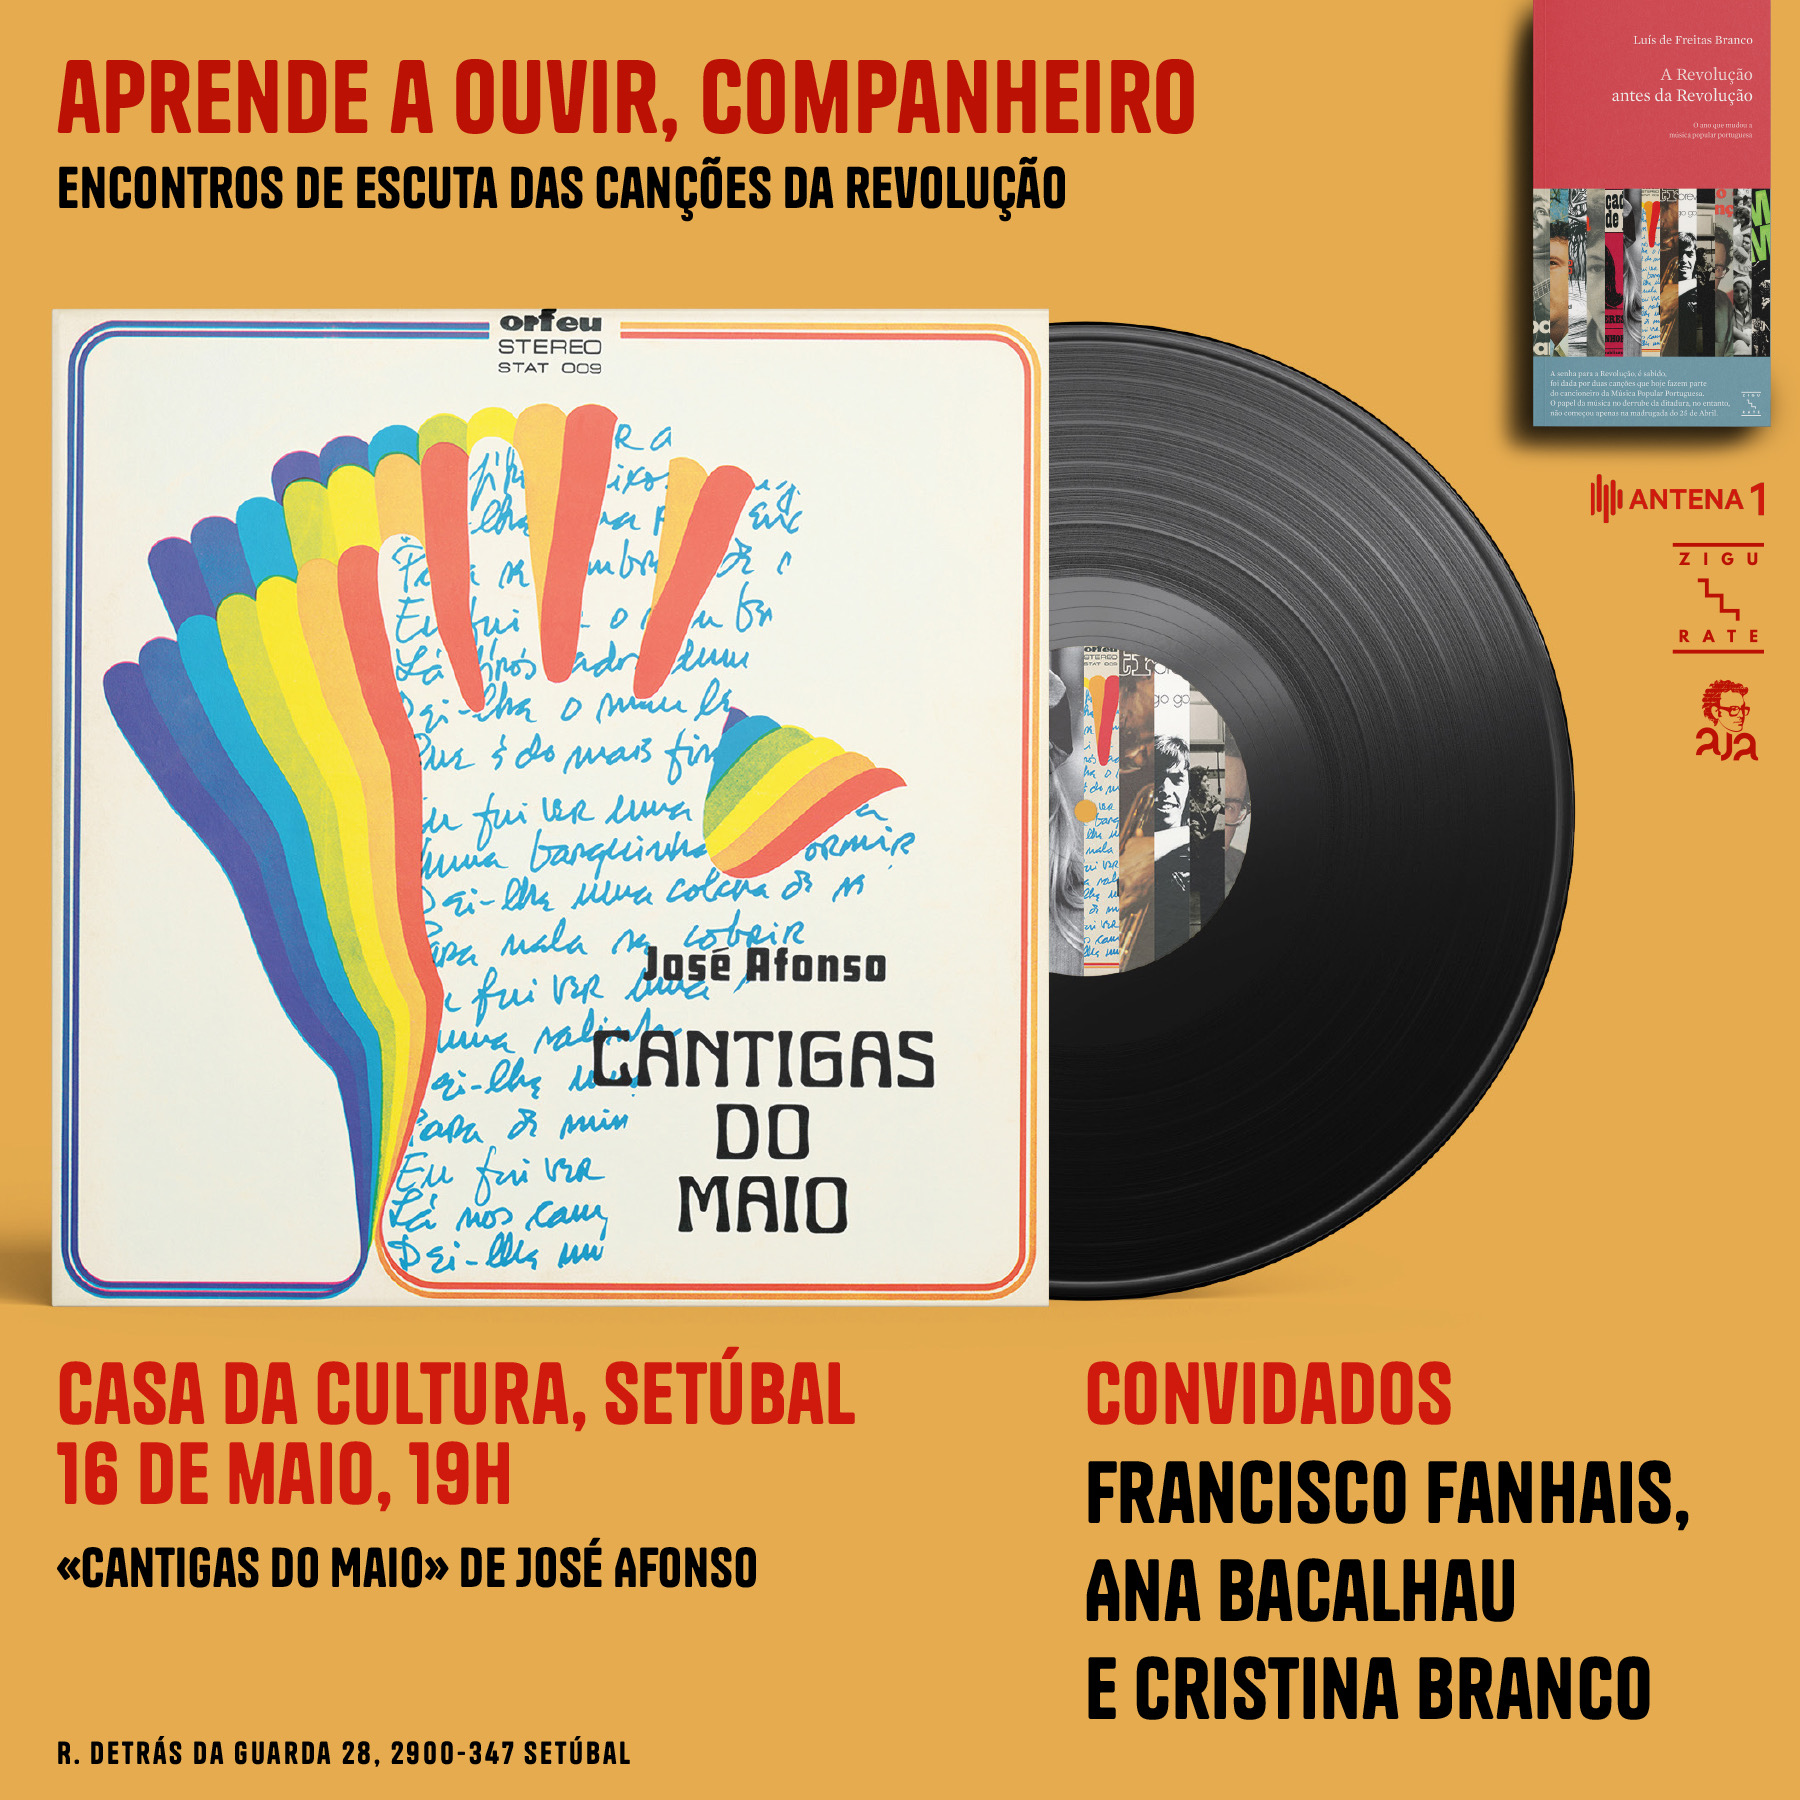 Capa do Evento APRENDE A OUVIR, COMPANHEIRO - “Cantigas do Maio” de José Afonso